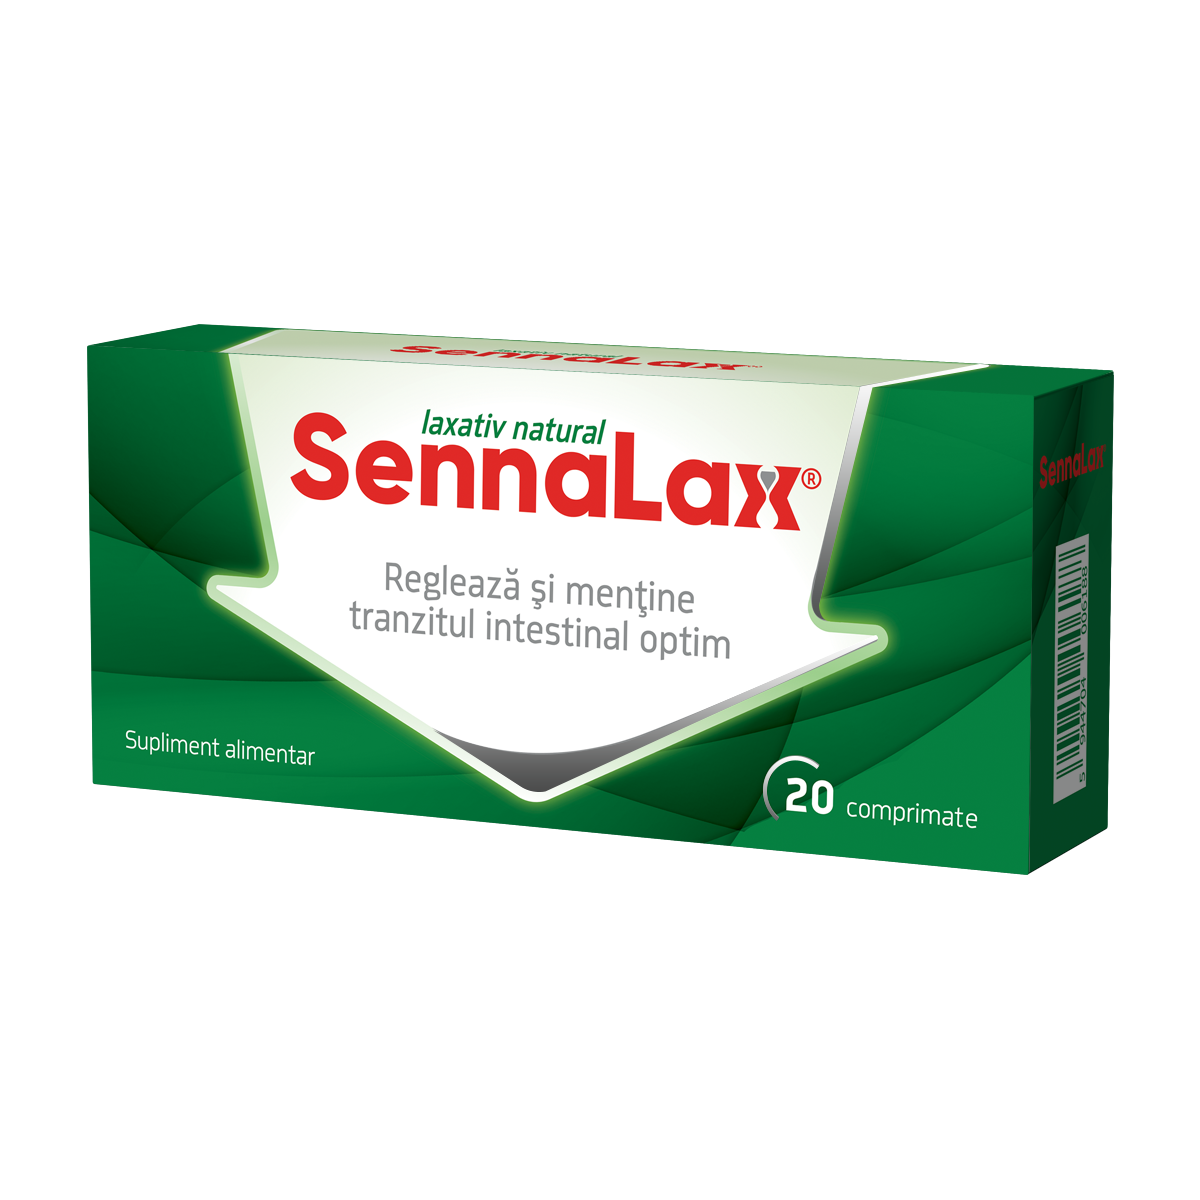 Constipatie - Sennalax, 20 comprimate, Biofarm, sinapis.ro